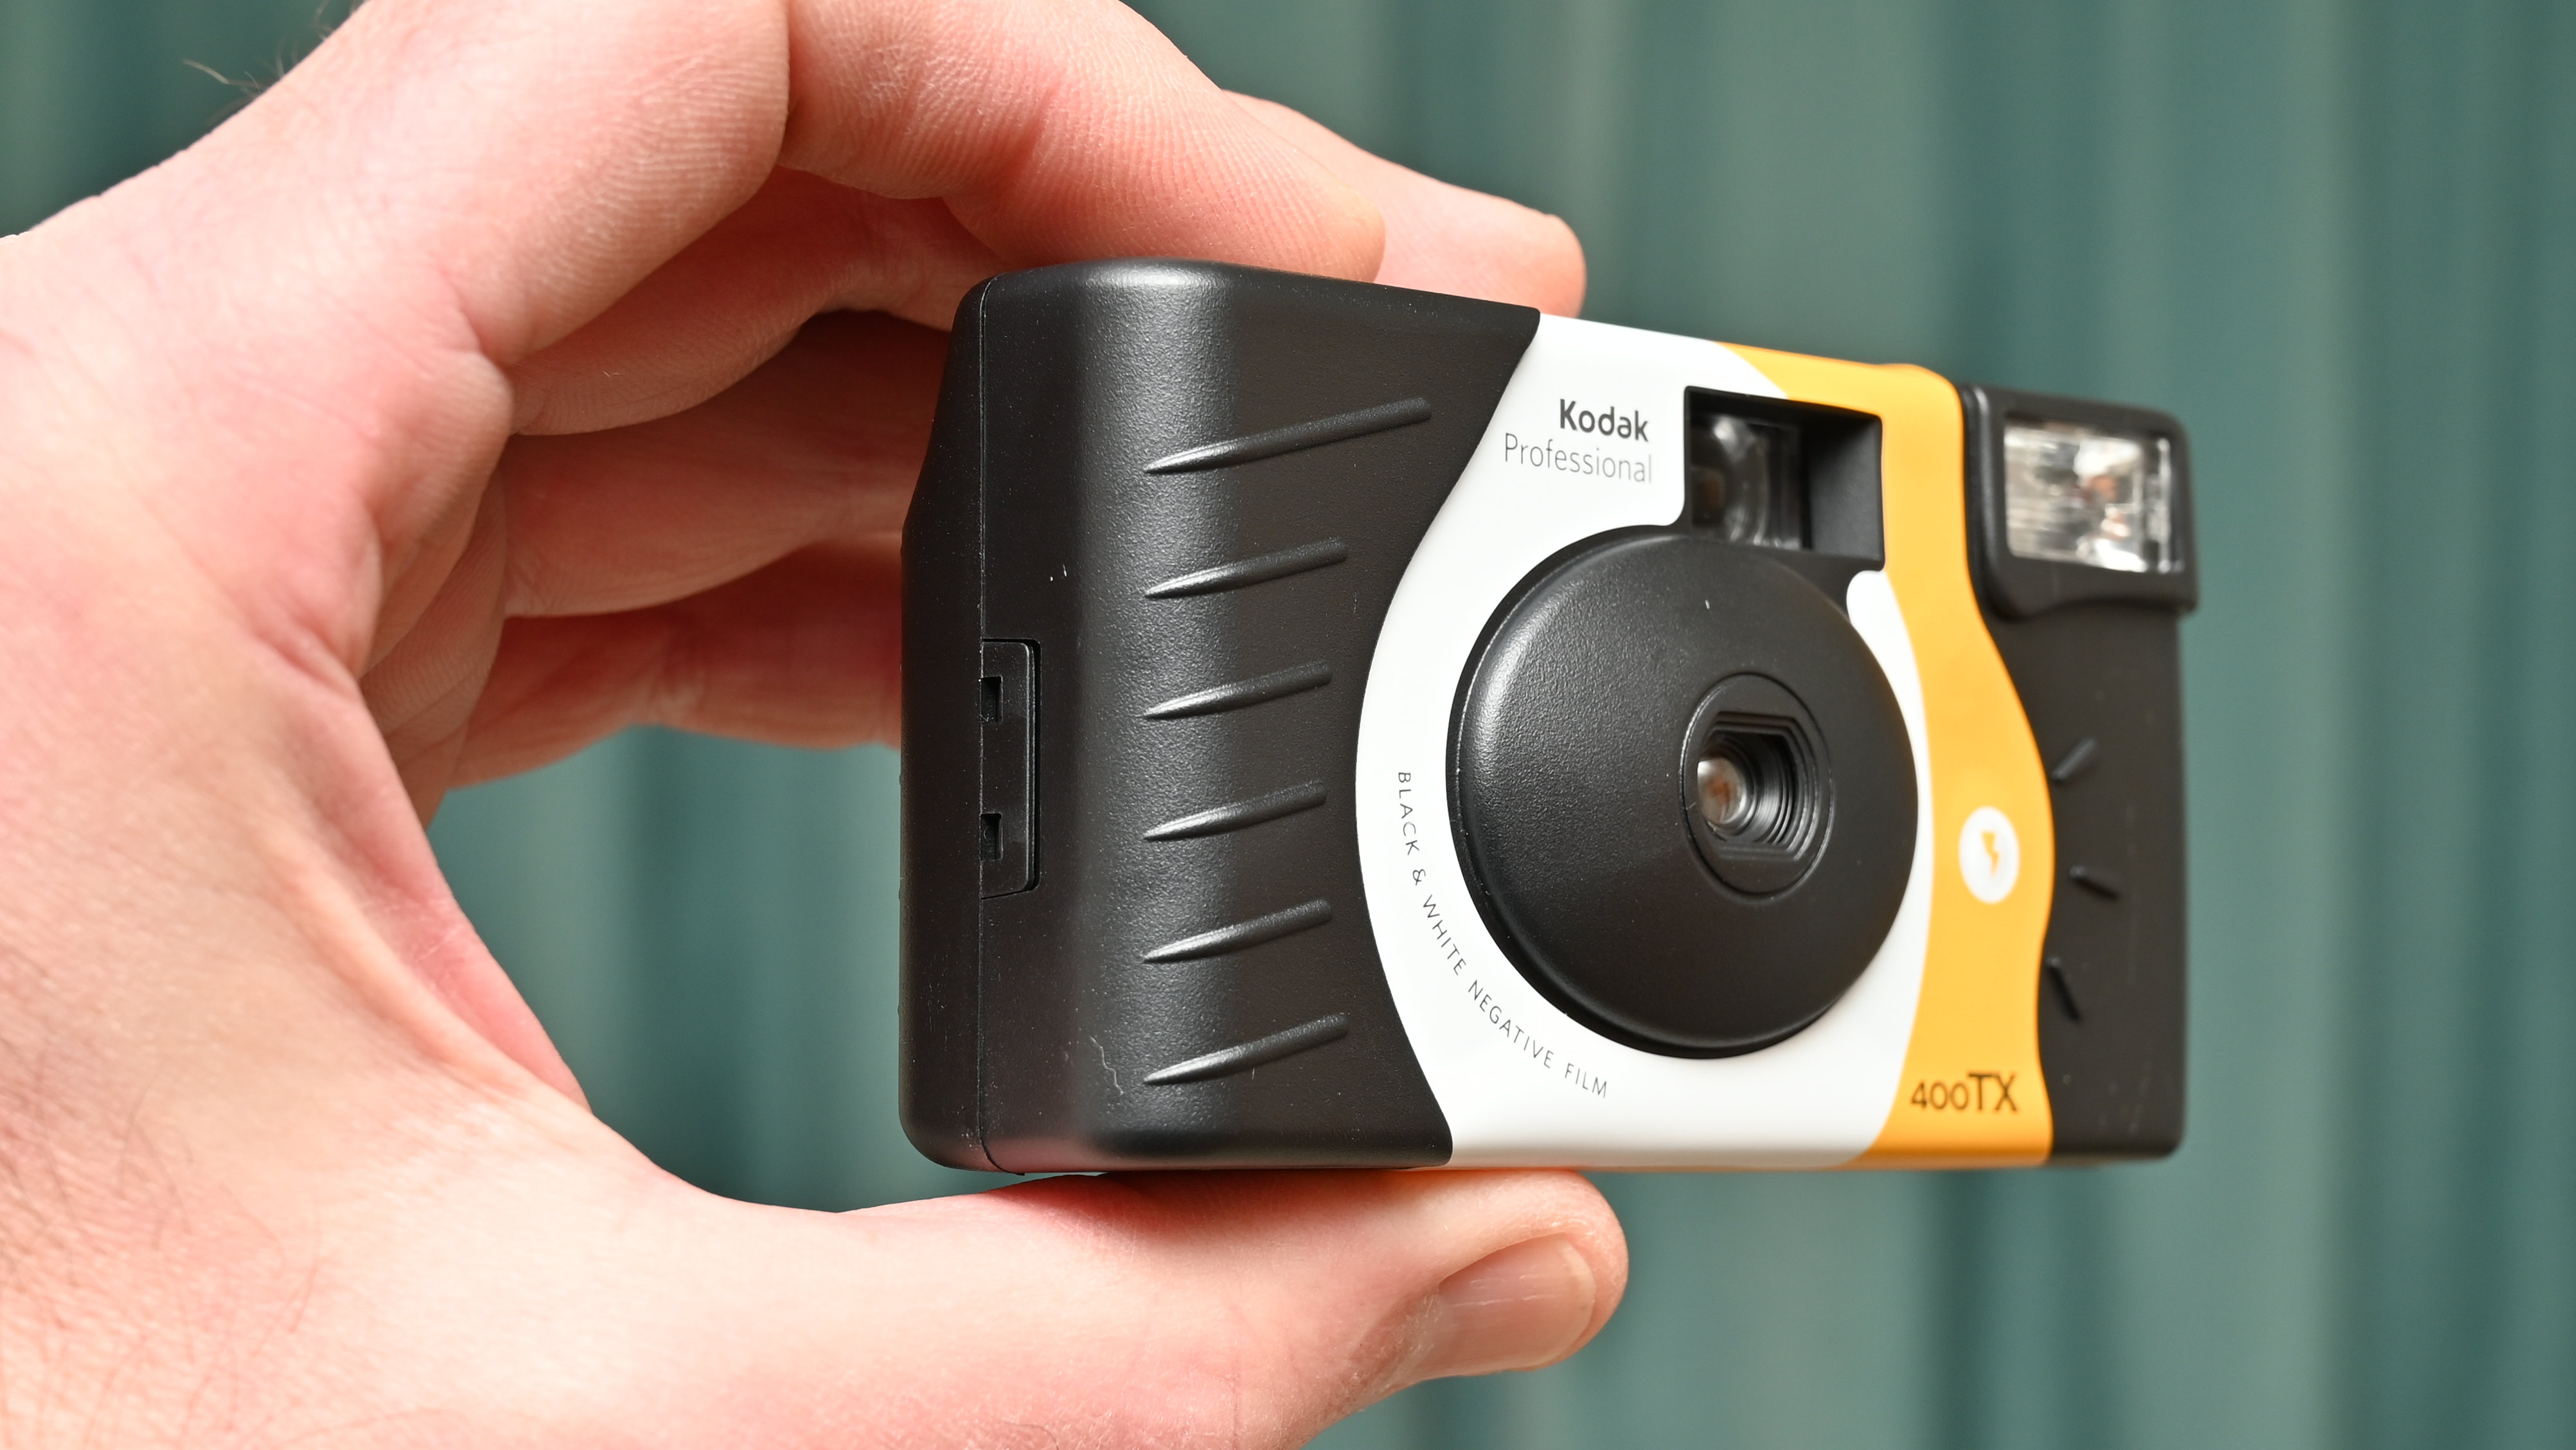 كاميرا كوداك أبيض وأسود Tri-X 400 للاستخدام الفردي